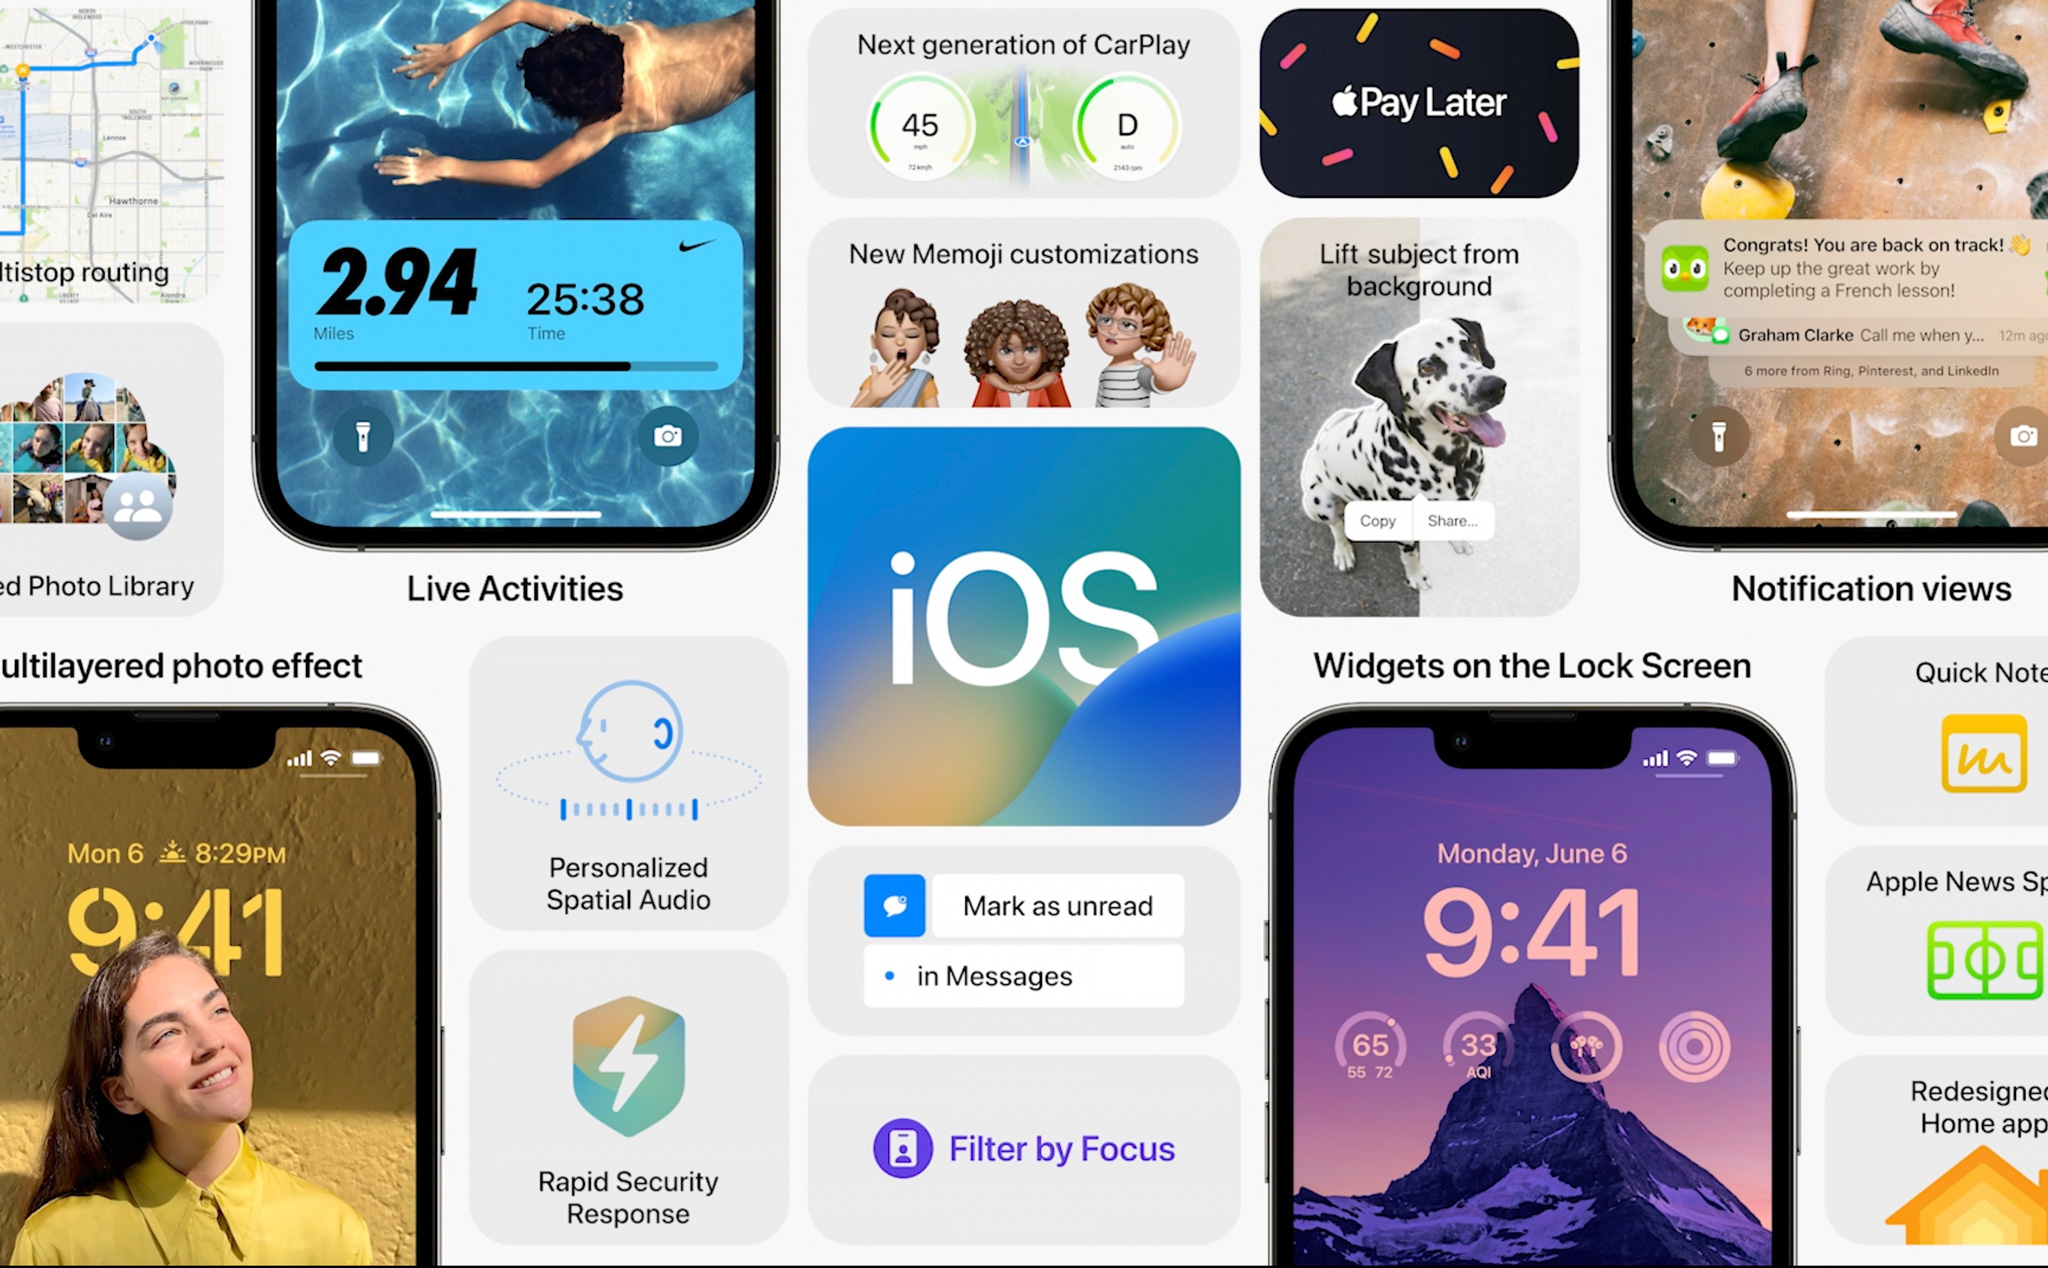 Thay đổi trên iOS 16: iOS 16 là một phiên bản đáng mong đợi bởi những thay đổi đáng kể trên giao diện và tính năng. Với những cập nhật mới như chế độ tối, trình duyệt Safari, hệ thống nhắc nhở thông minh,… iOS 16 của bạn sẽ trở nên đáng giá hơn bao giờ hết.